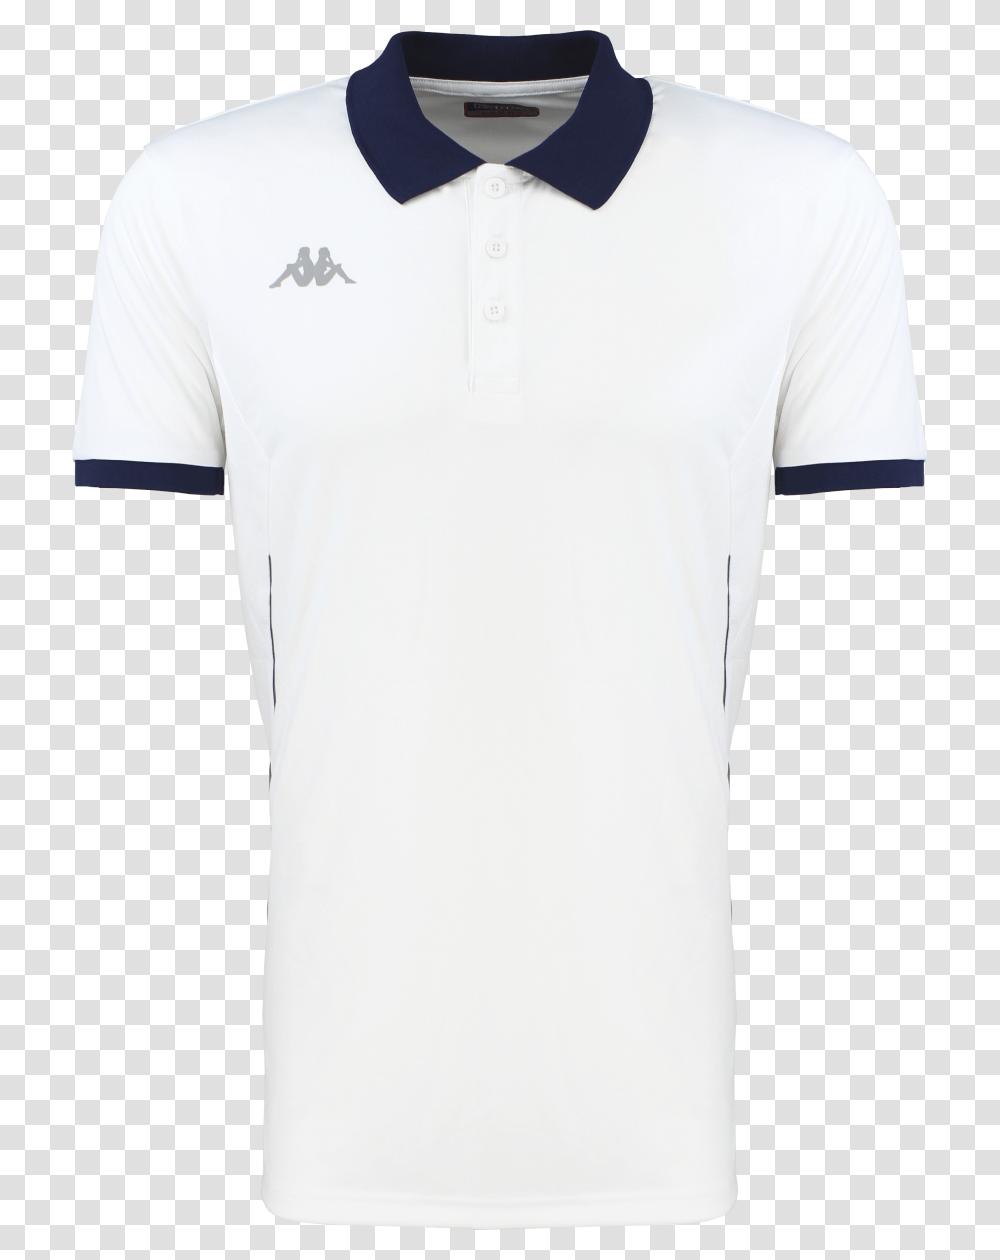 Faedis Tennis Shirt, Apparel, Sleeve, T-Shirt Transparent Png